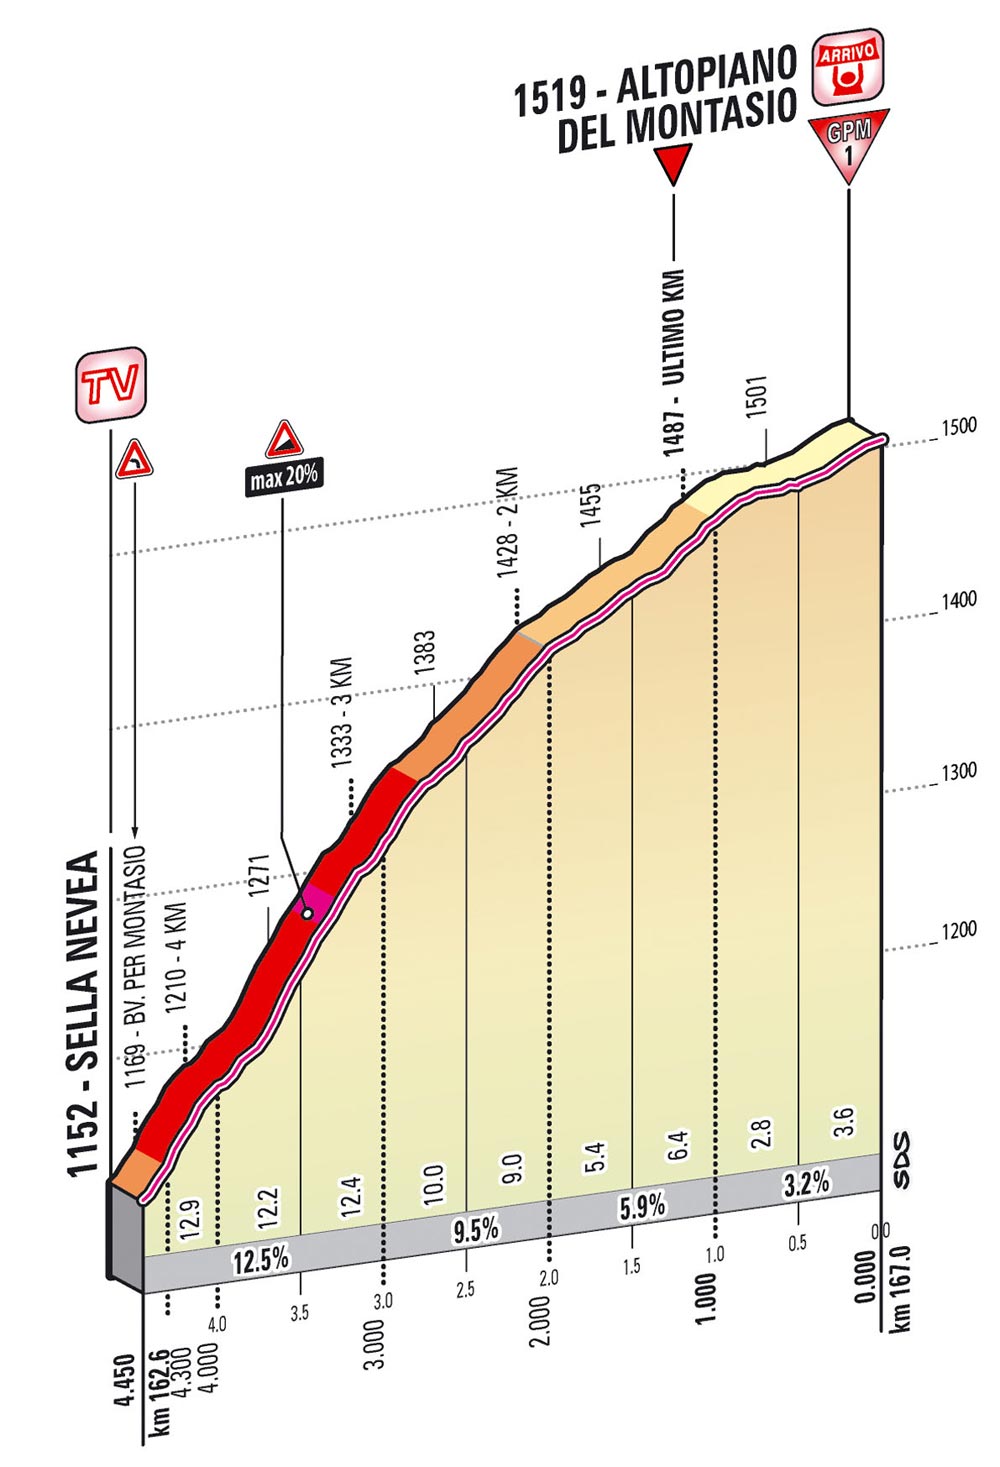 Giro d'Italia 2013 stage 10 last kms